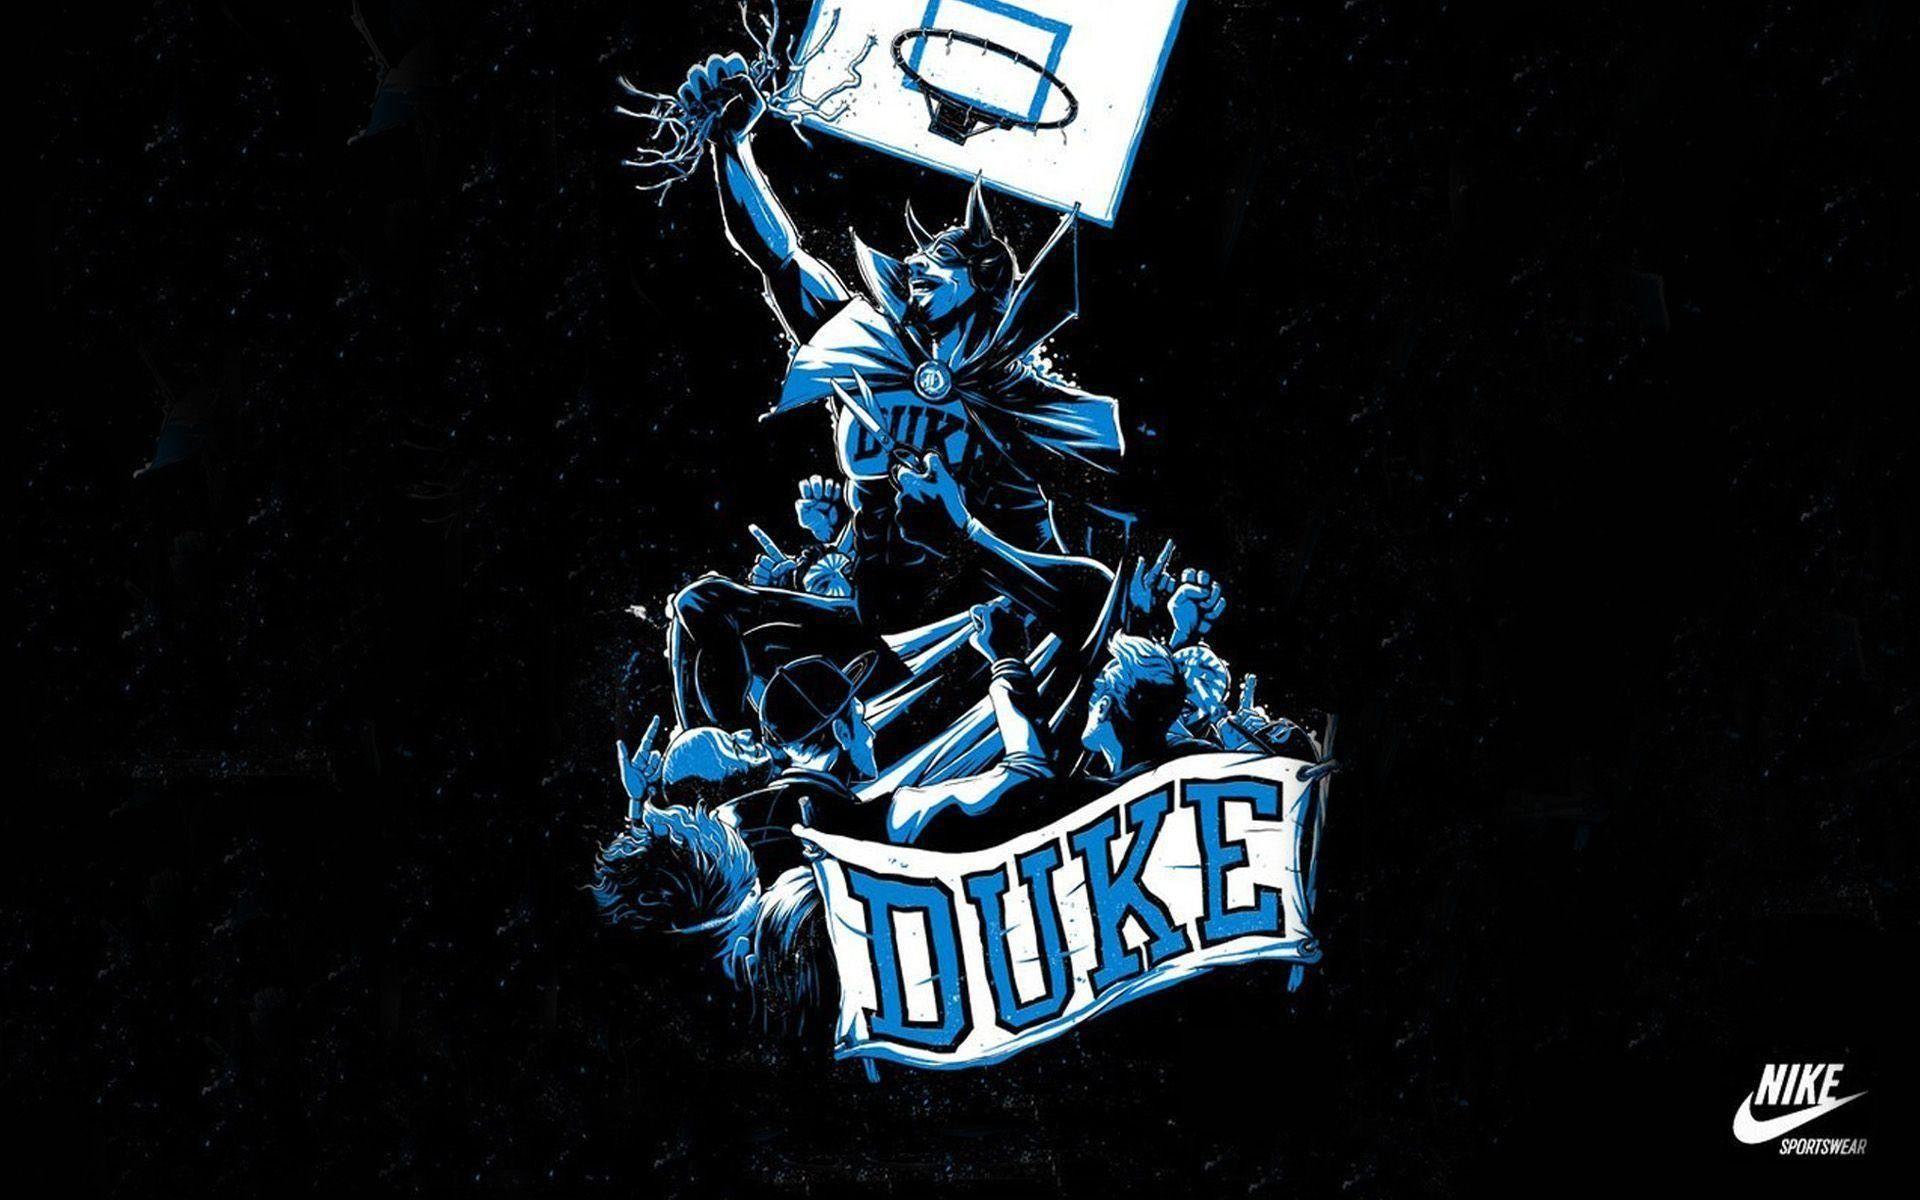 Duke Basketball Wallpaper 2018